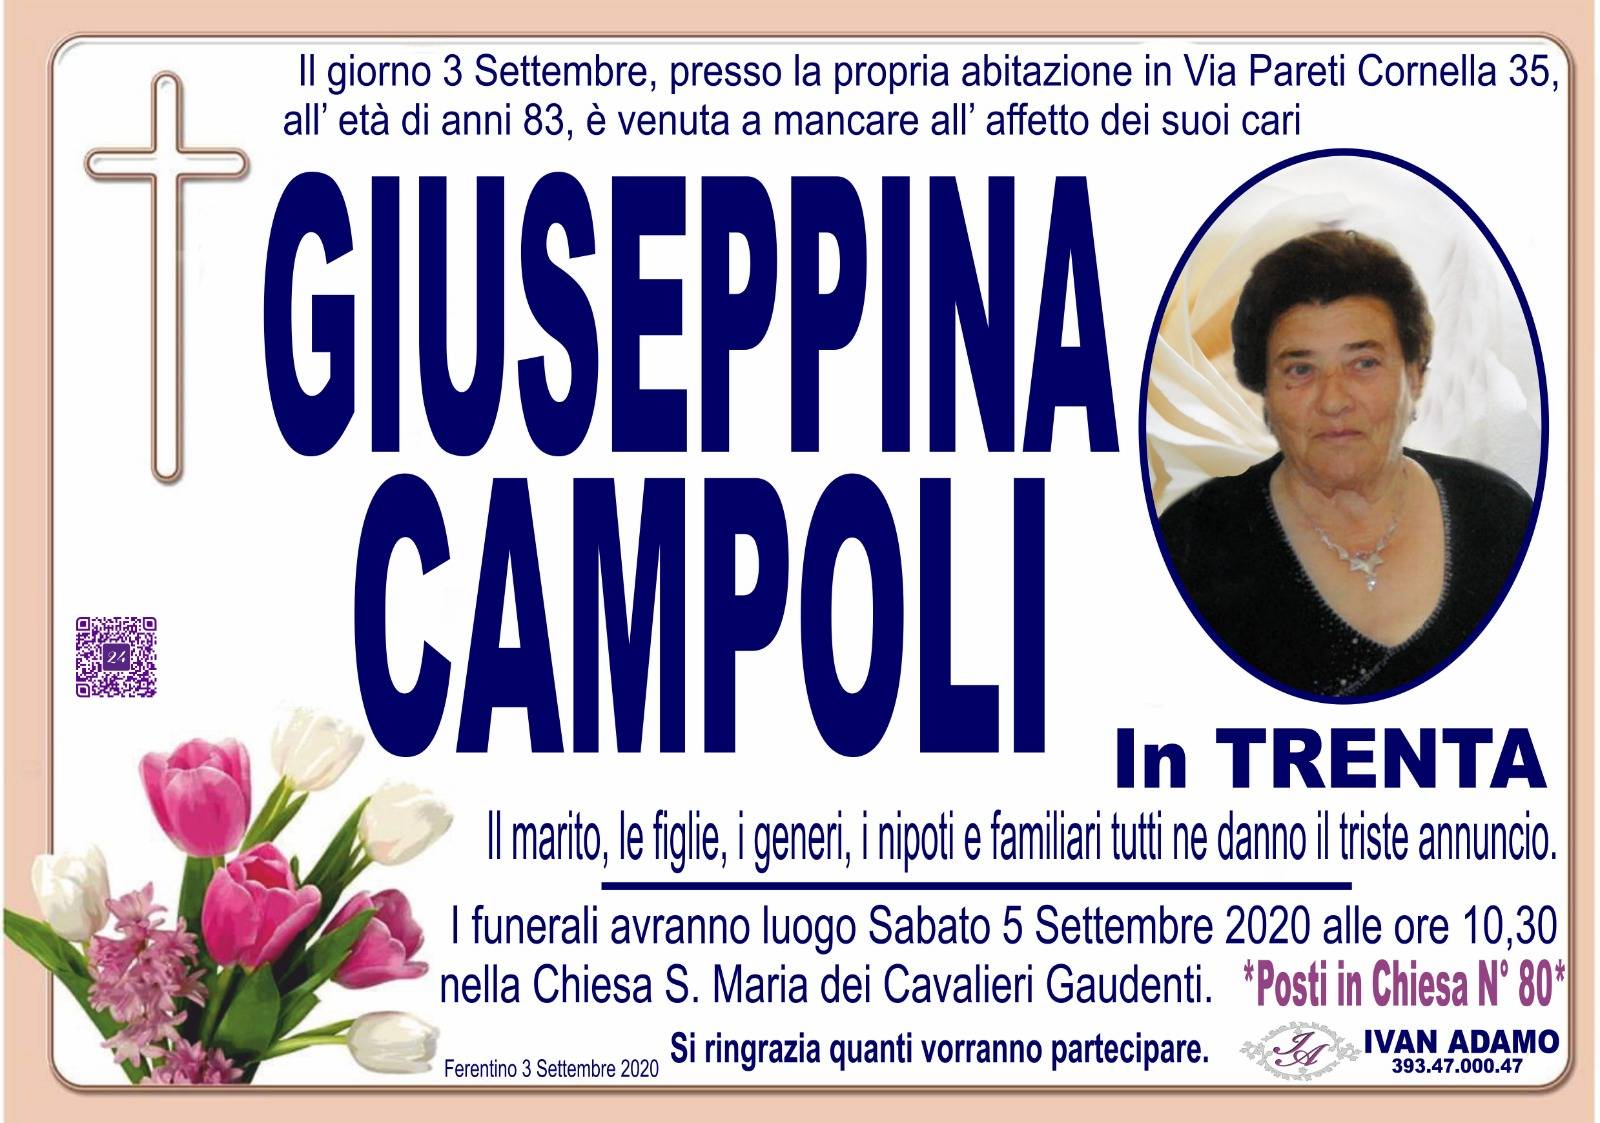 Giuseppina Campoli